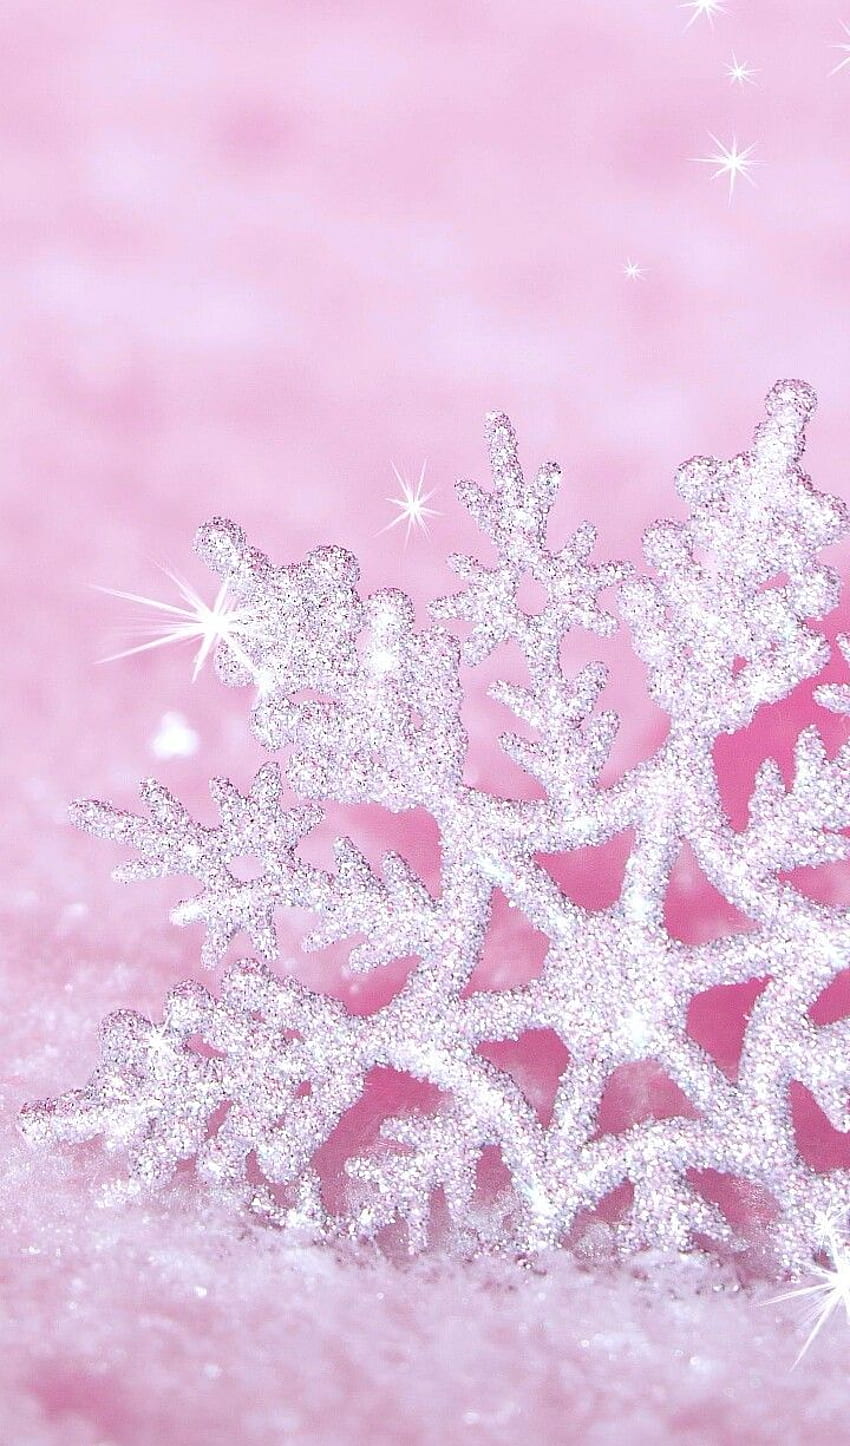 seni, Latar Belakang, indah, keindahan, hari Natal, warna-warni, Desain, berkilau, inspirasi, cahaya, kemewahan, tahun baru, pastel, berwarna merah muda, salju, kepingan salju, lembut, gaya, , , kami menyukainya, musim dingin, Latar Belakang, seni yang indah, warna pastel, seni pastel wallpaper ponsel HD